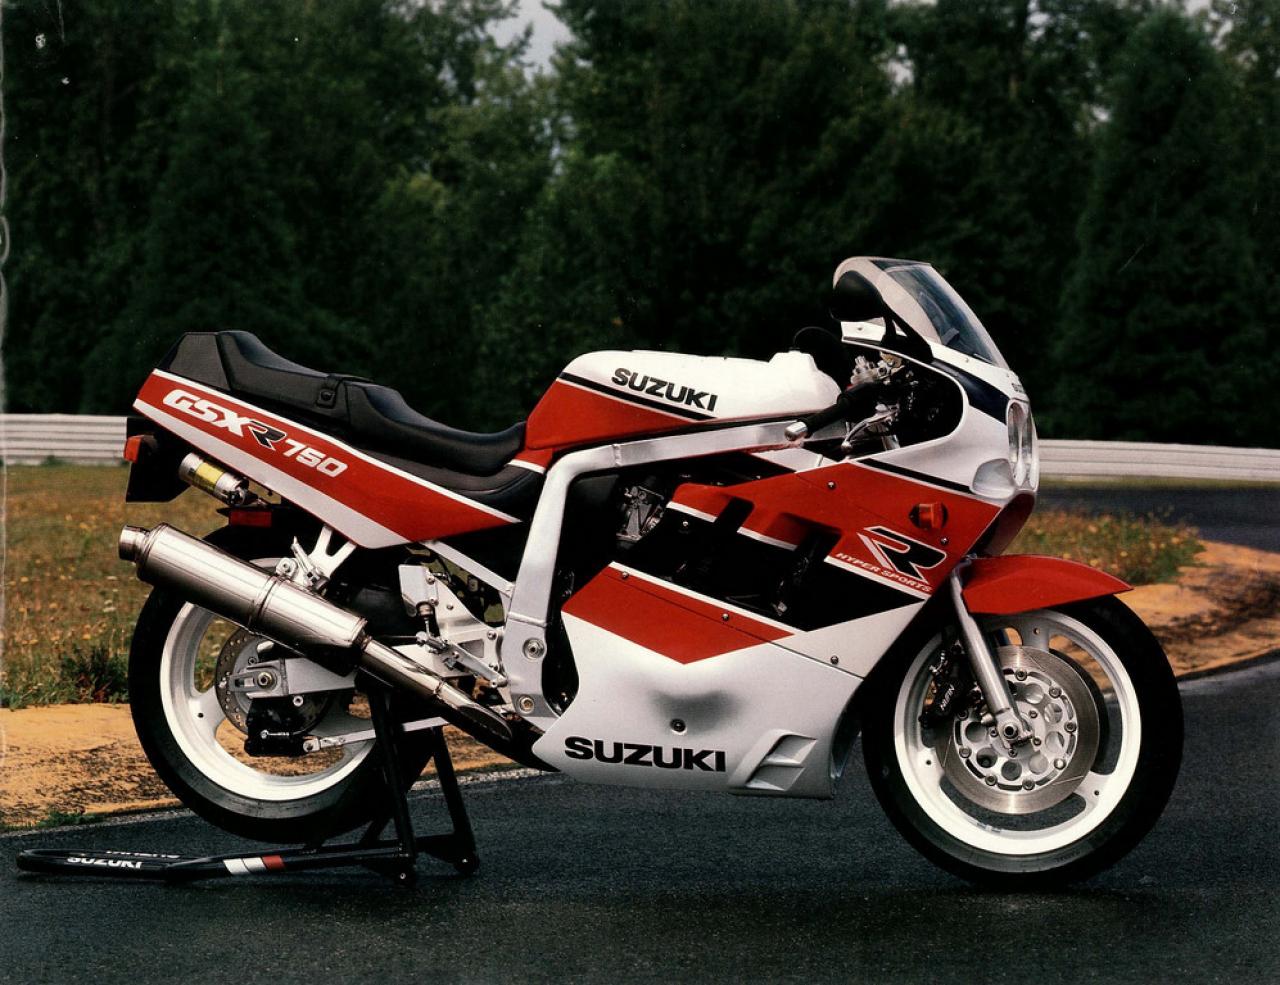 1990 Suzuki GSX 600 F (reduced effect)